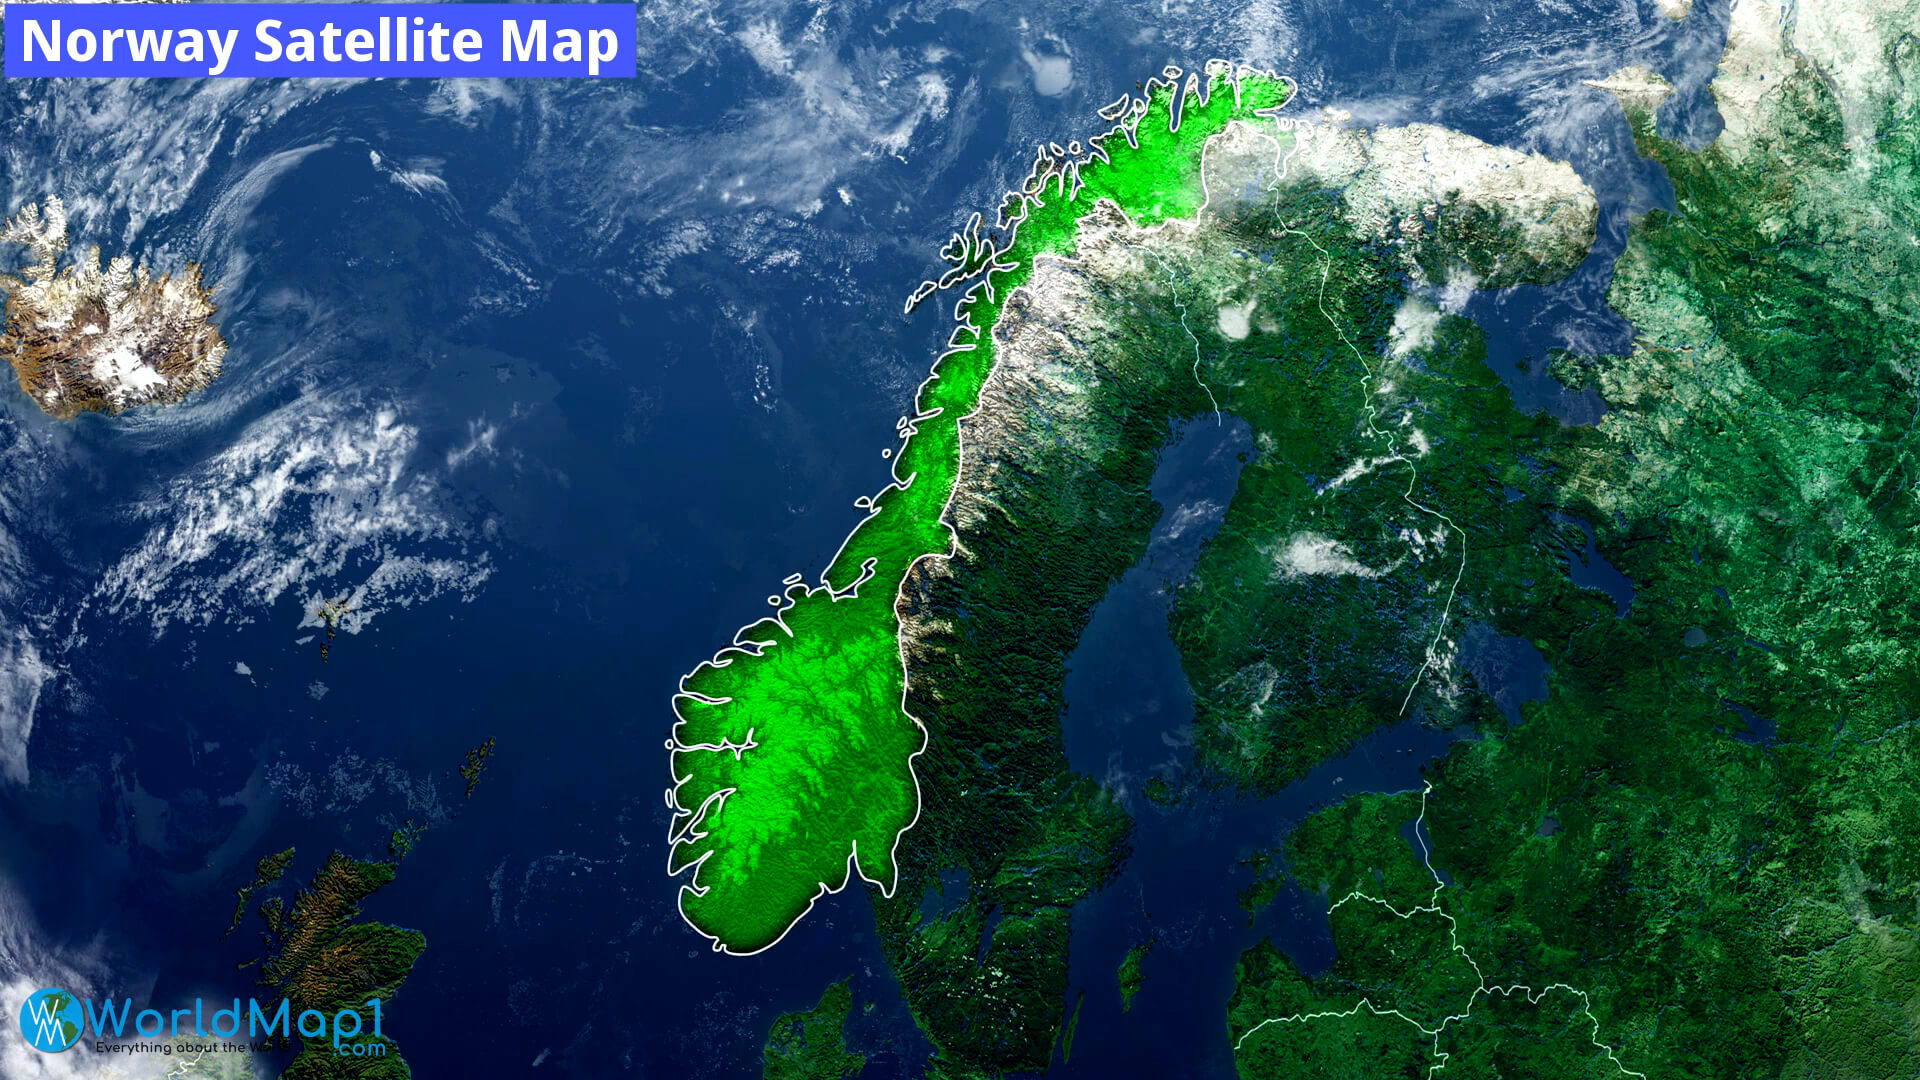 Norway Satellite Map